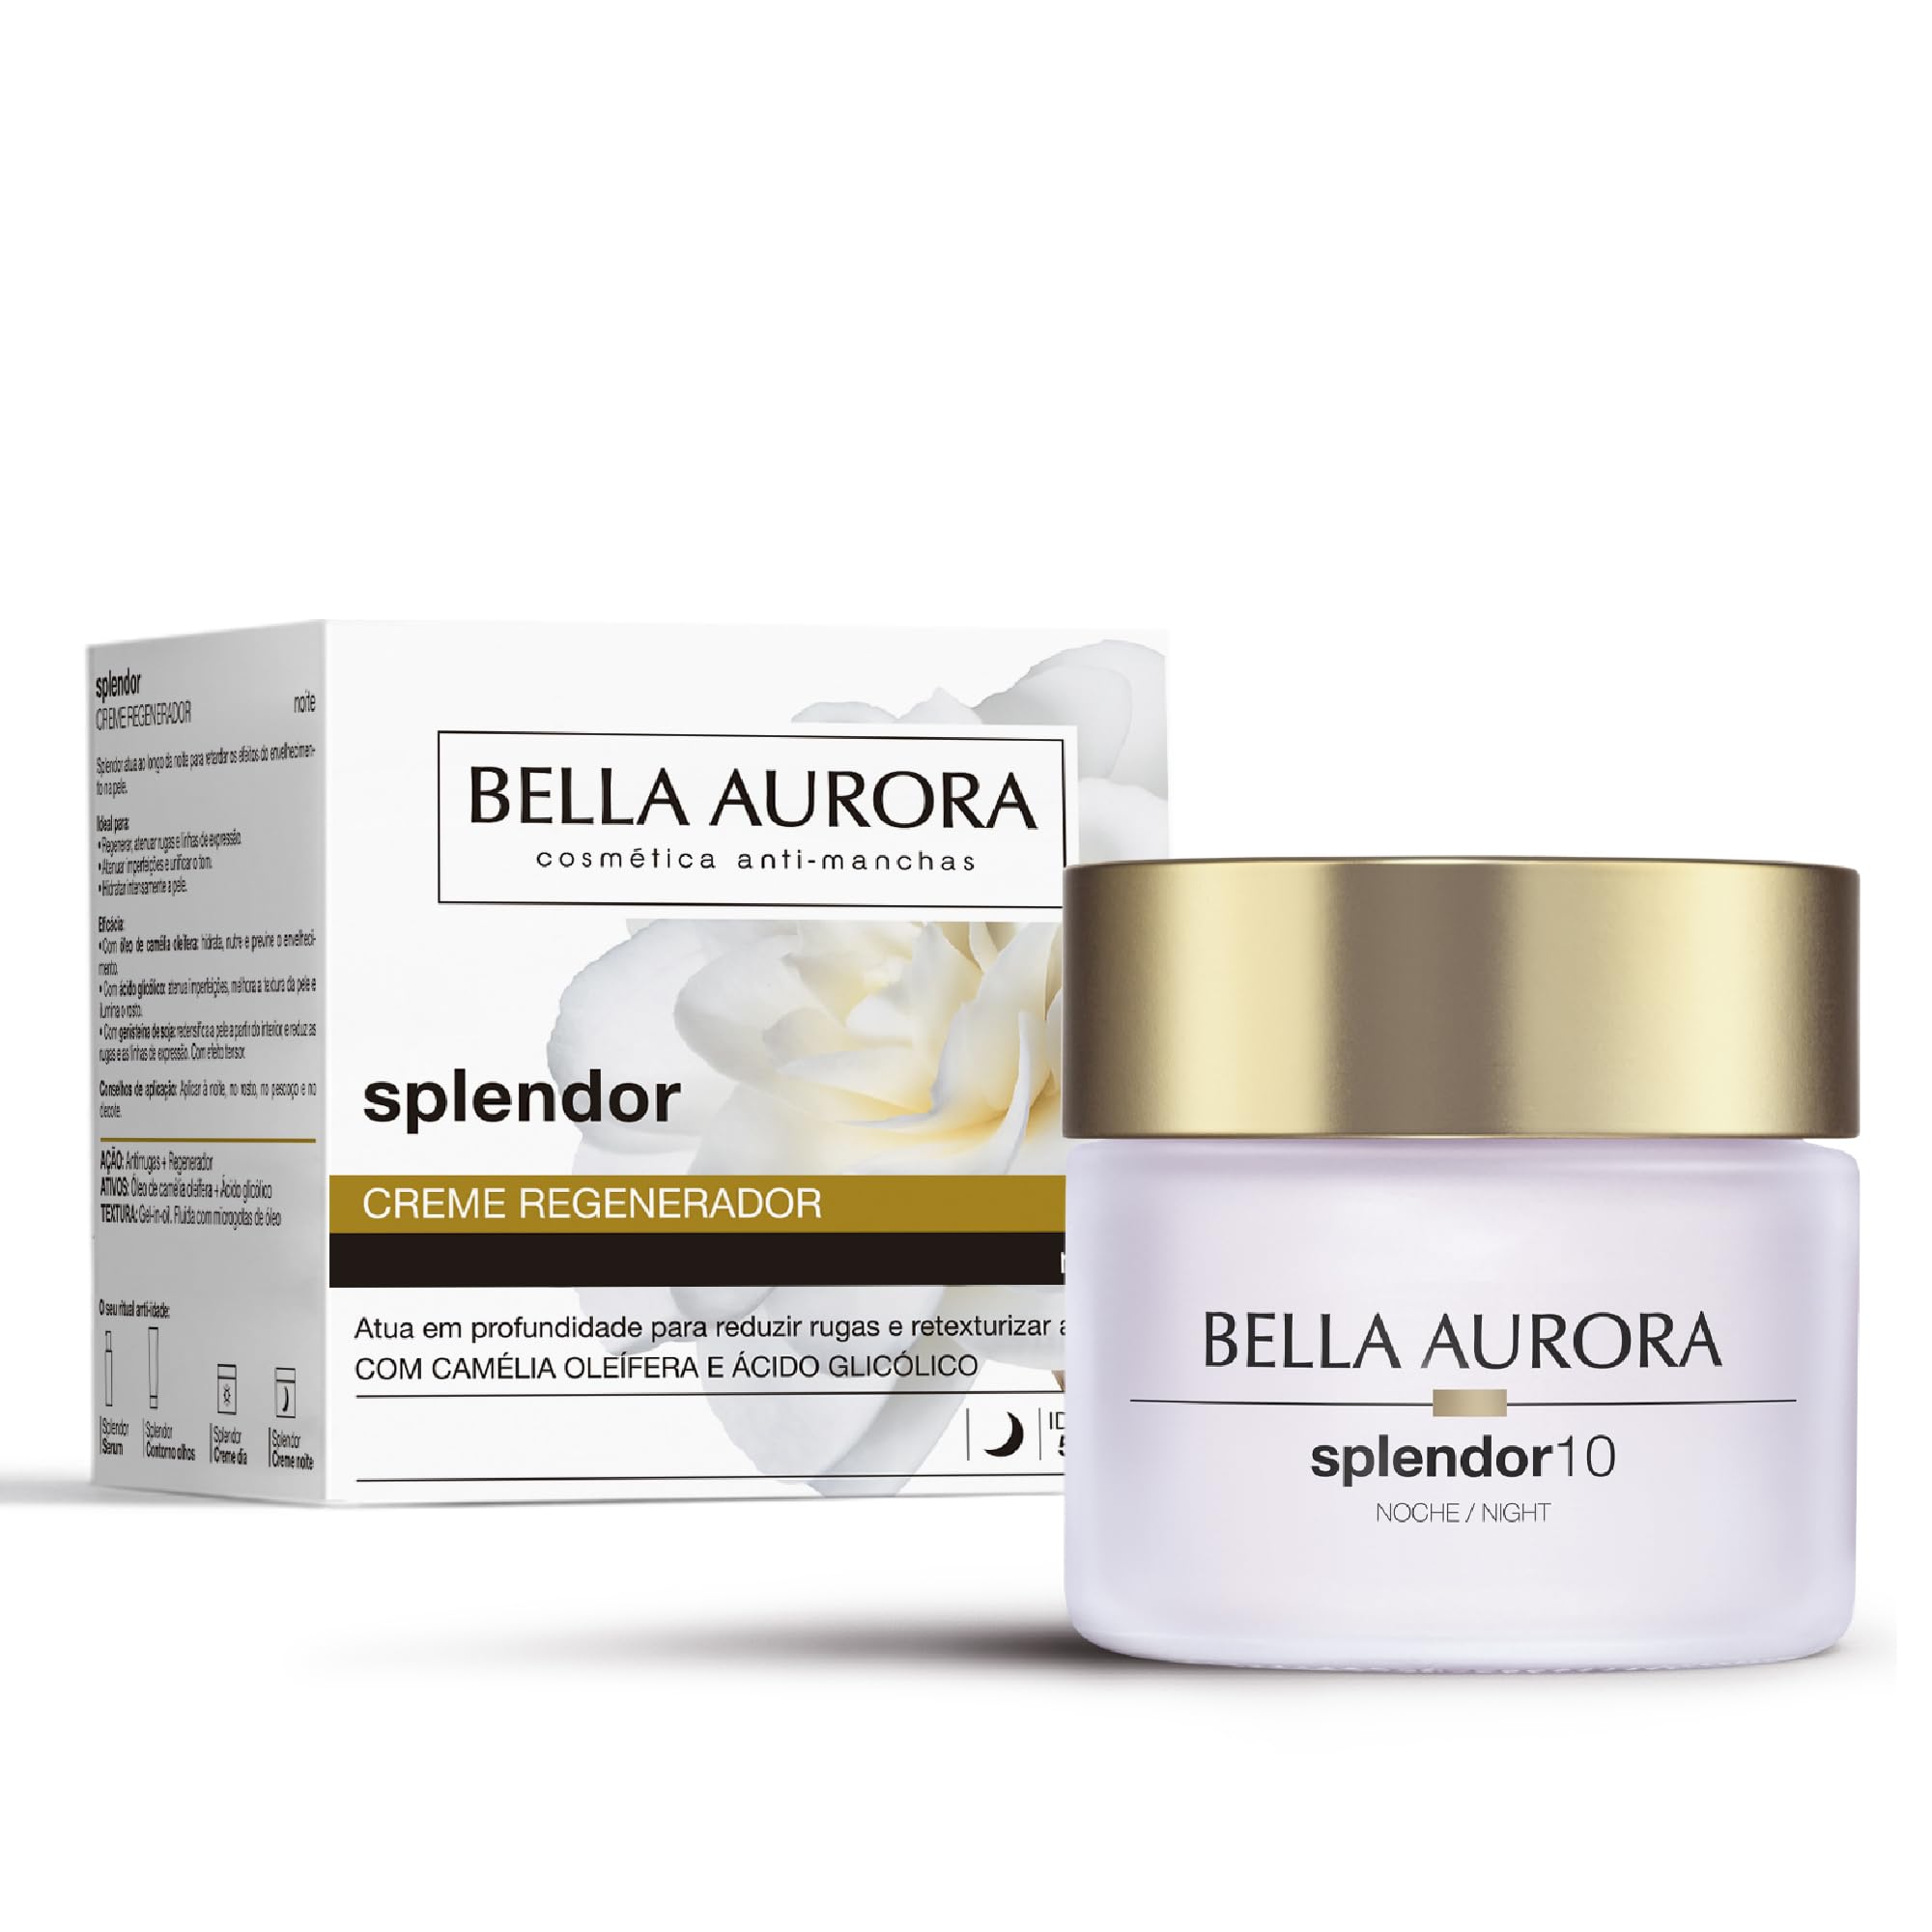 Bella Aurora, Splendor10, Anti-Ageing Behandlung 50+ Jahre, Anti-Falten, Anti-Ageing, feuchtigkeitsspendend (Regenerierende Nachtcreme)